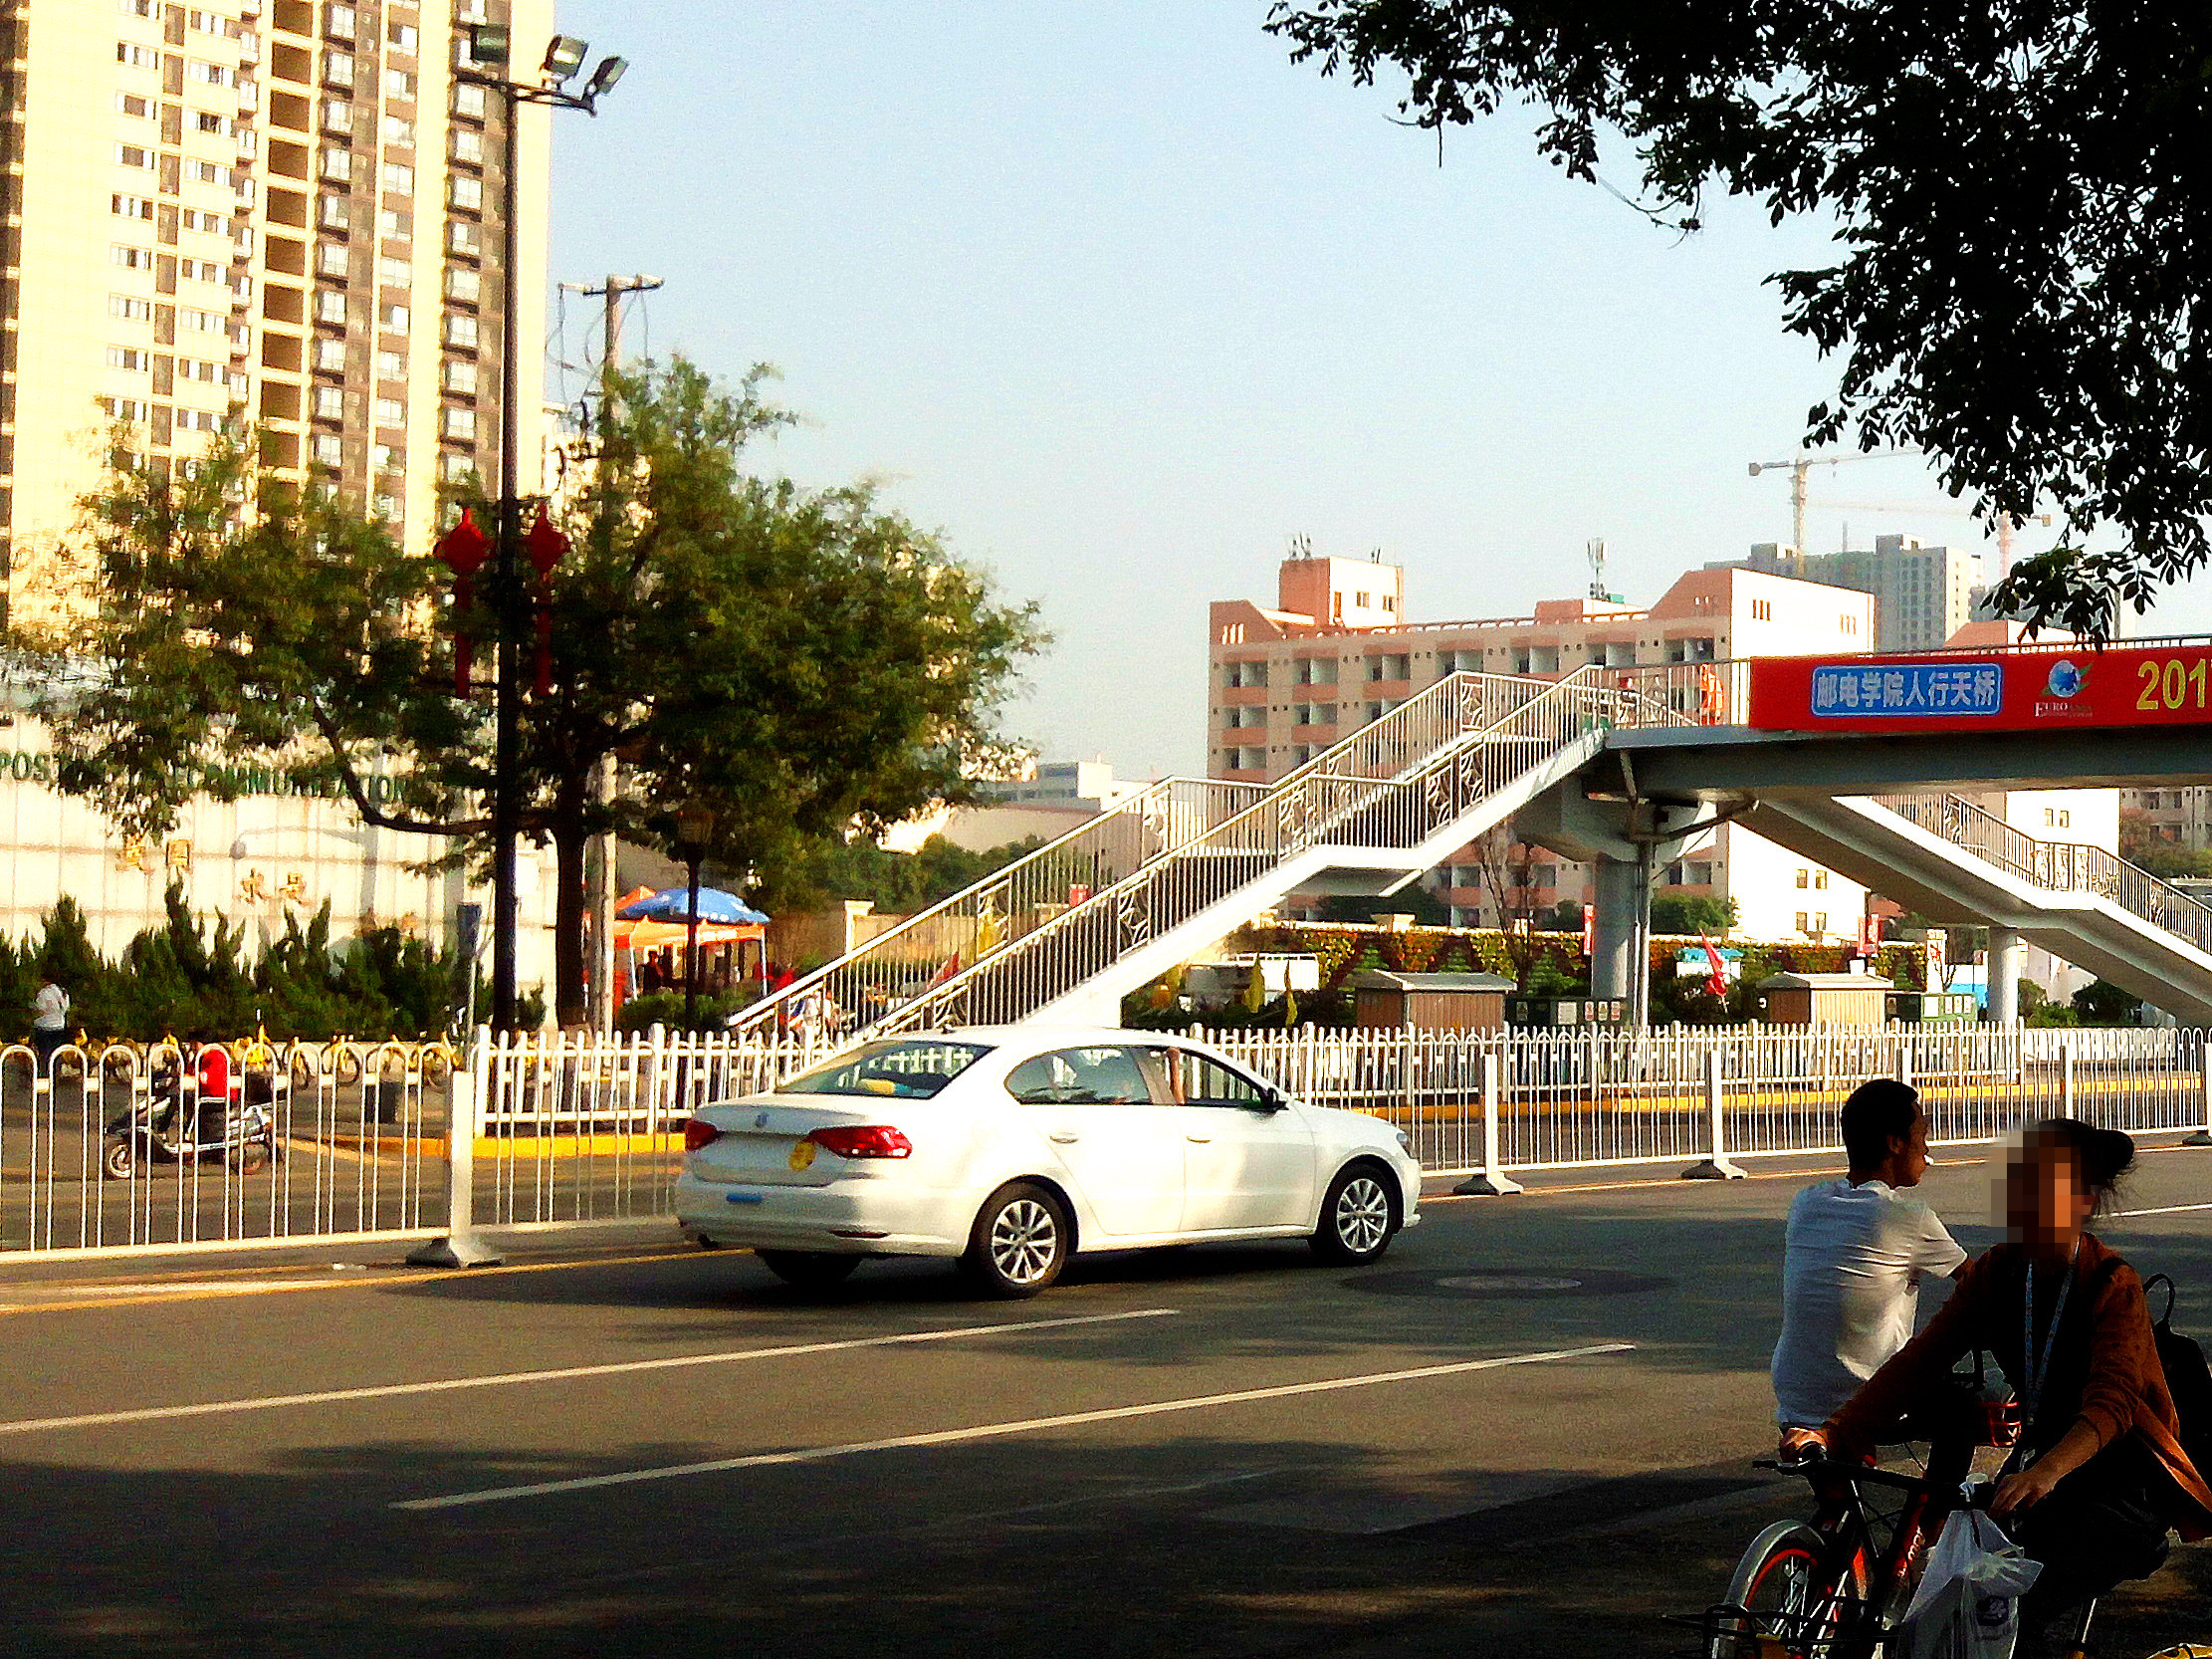 走过这个天桥,就是西安邮电大学的雁塔校区,与陕西省教育厅紧挨在一起